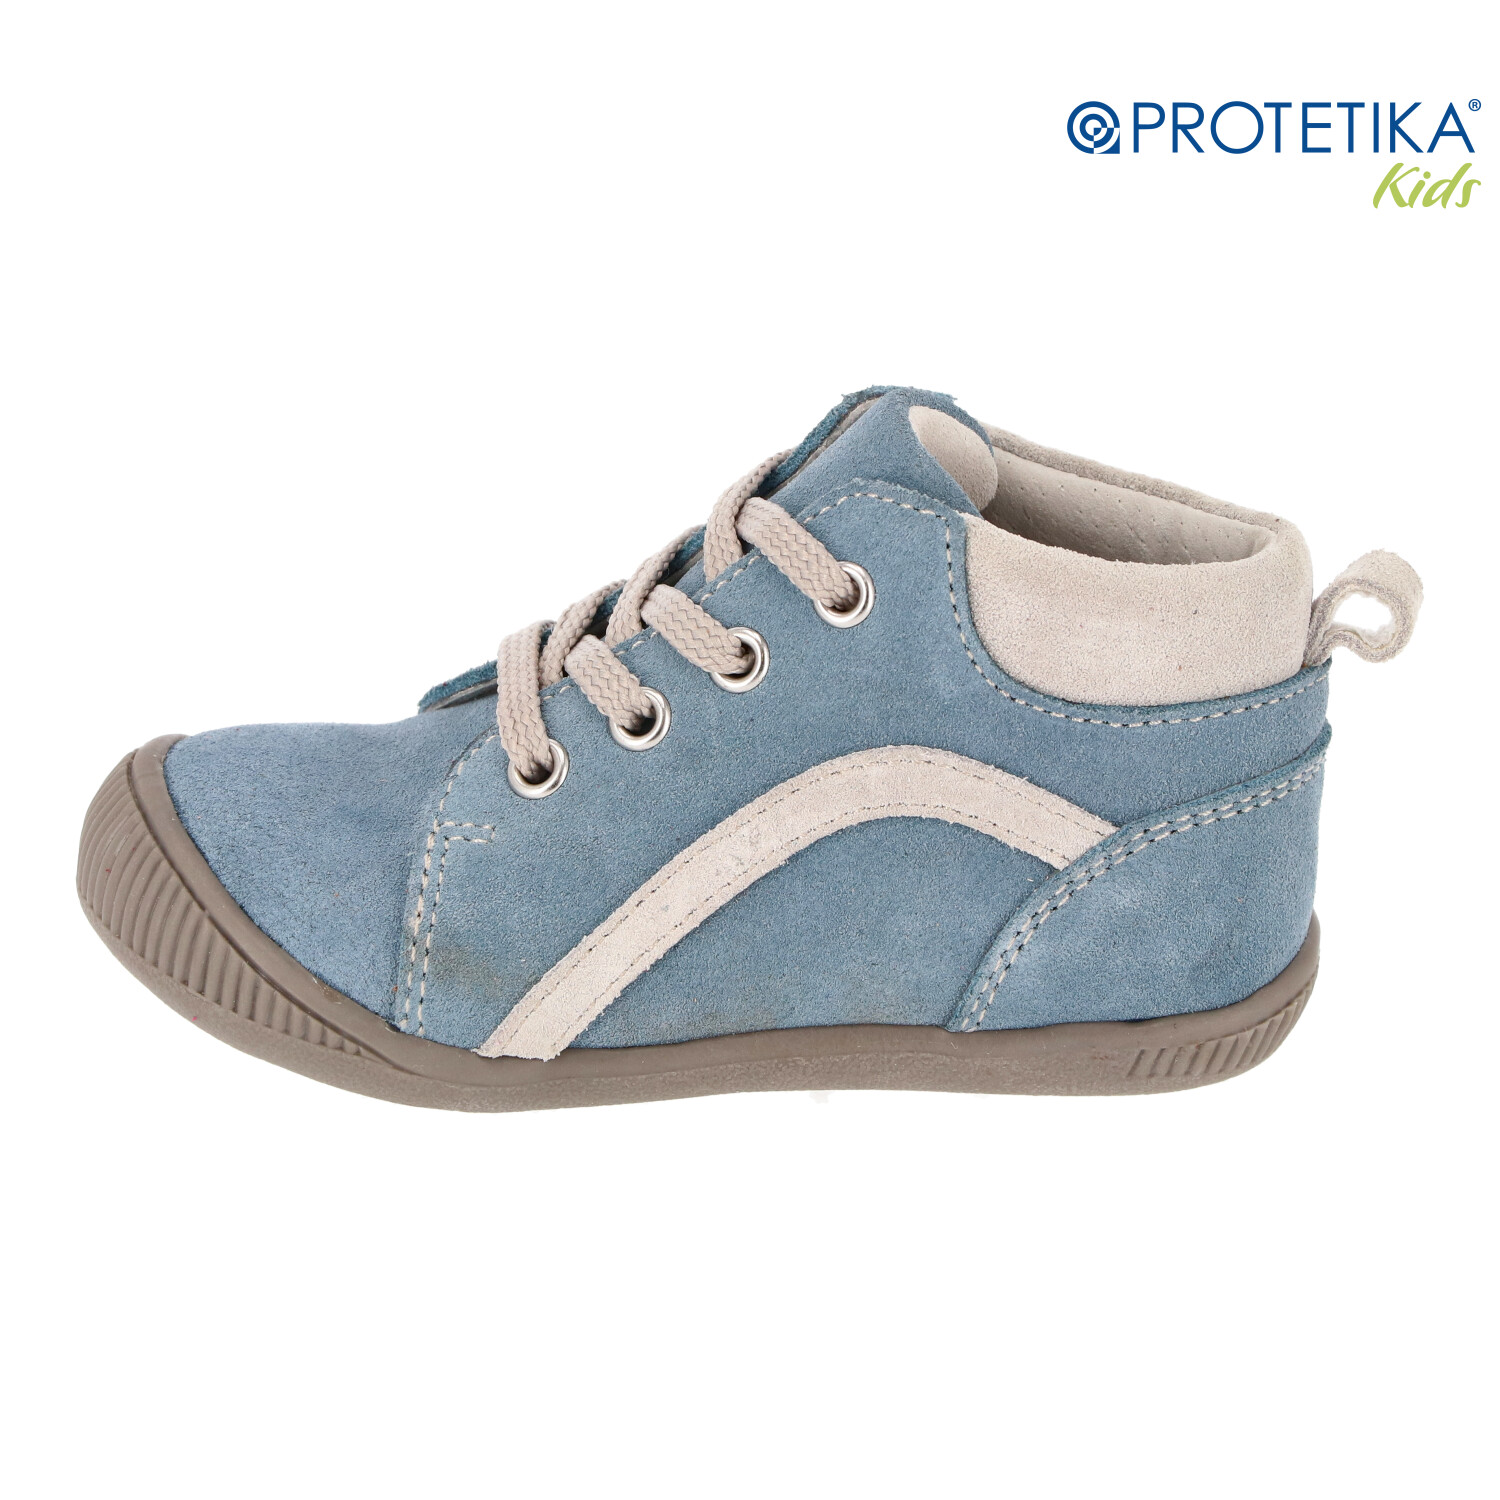 Protetika - topánky BABY blue